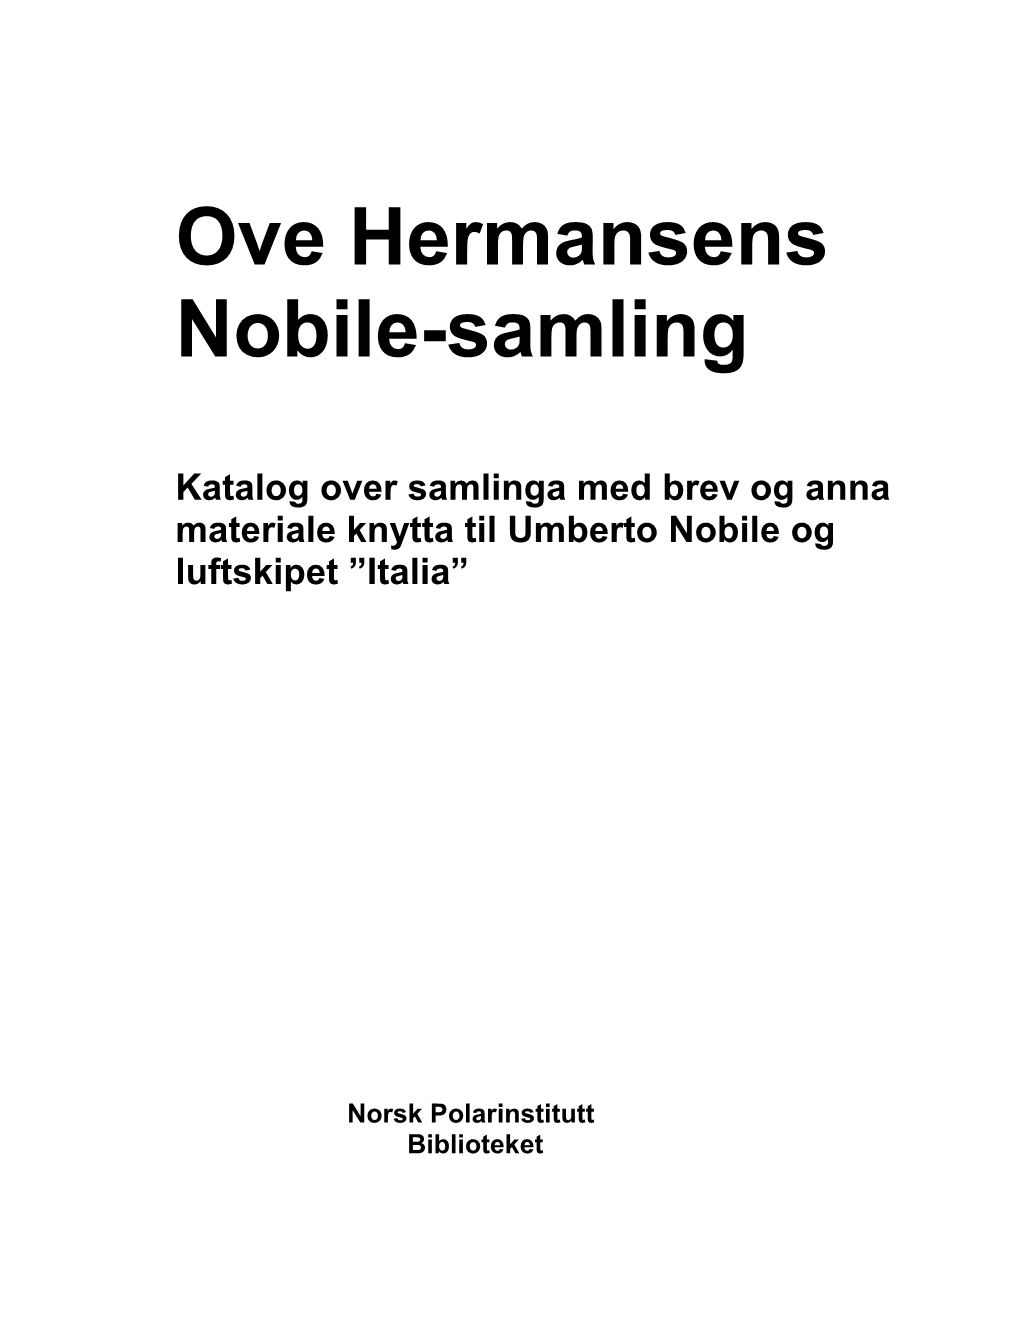 Ove Hermansens Nobile-Samling